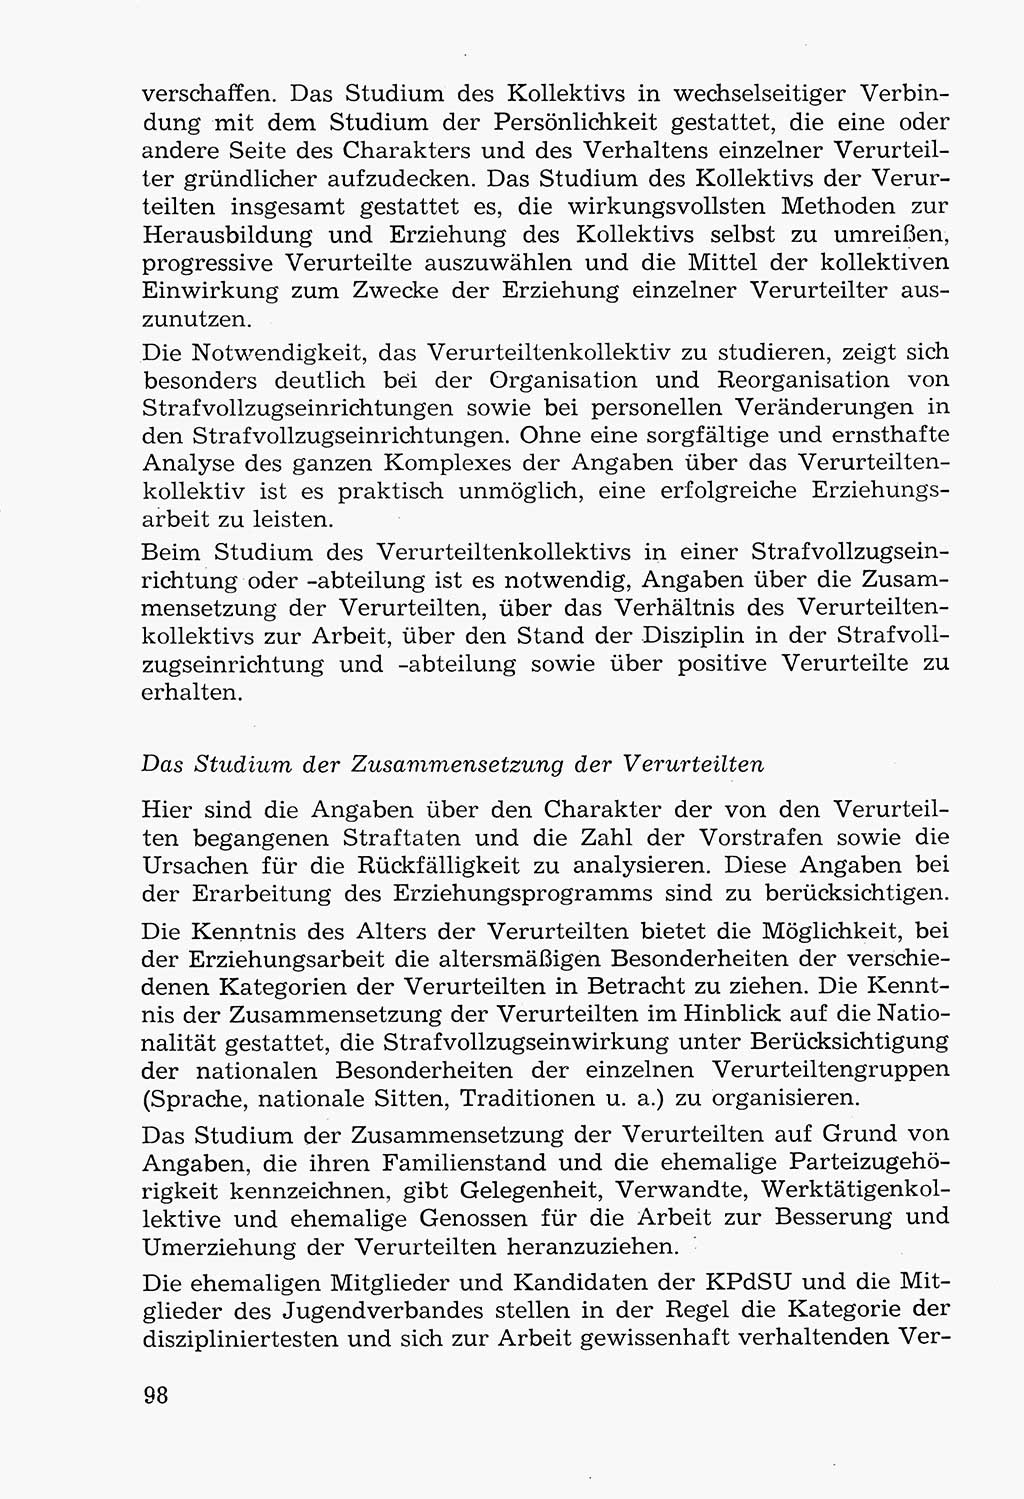 Lehrbuch der Strafvollzugspädagogik [Deutsche Demokratische Republik (DDR)] 1969, Seite 98 (Lb. SV-Pd. DDR 1969, S. 98)